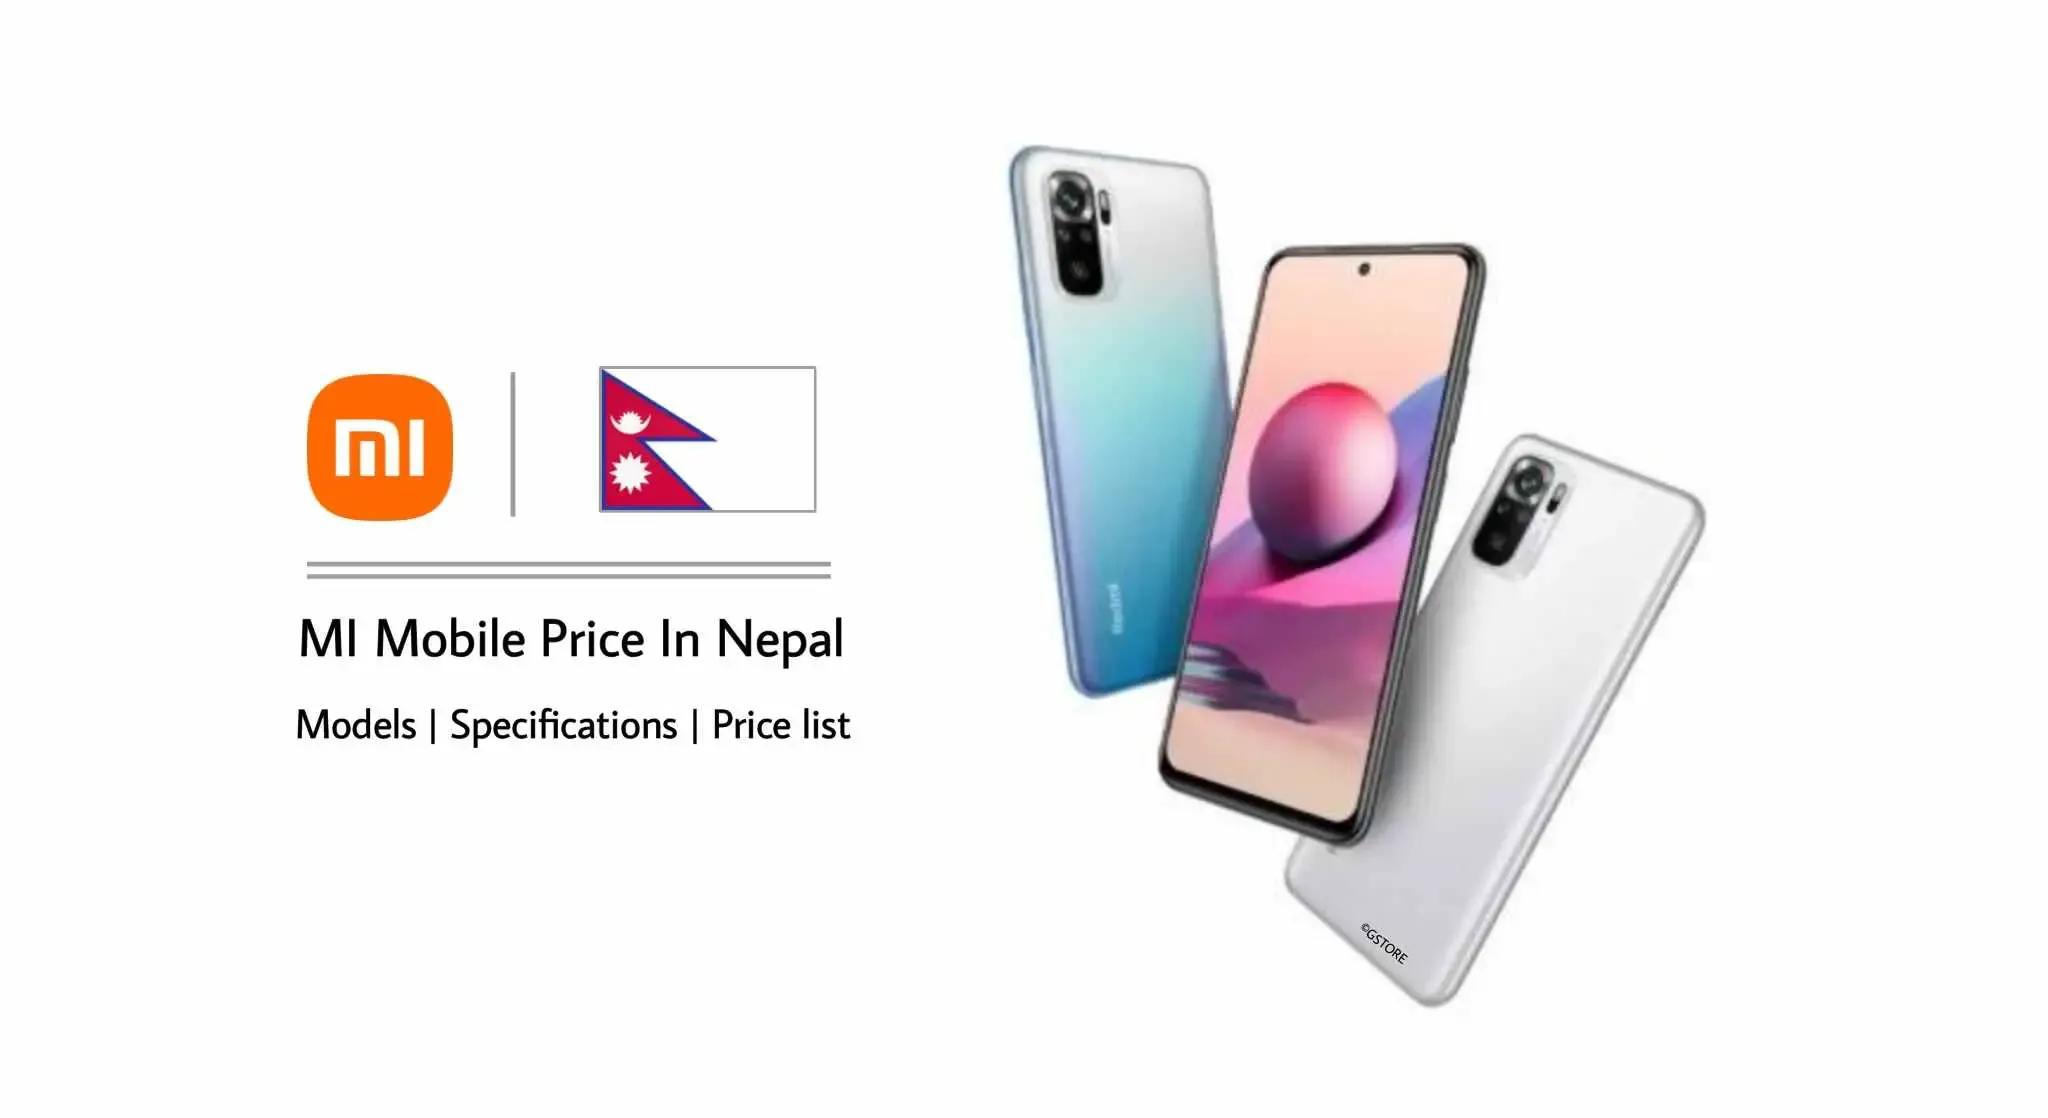 mi mobile price in nepal